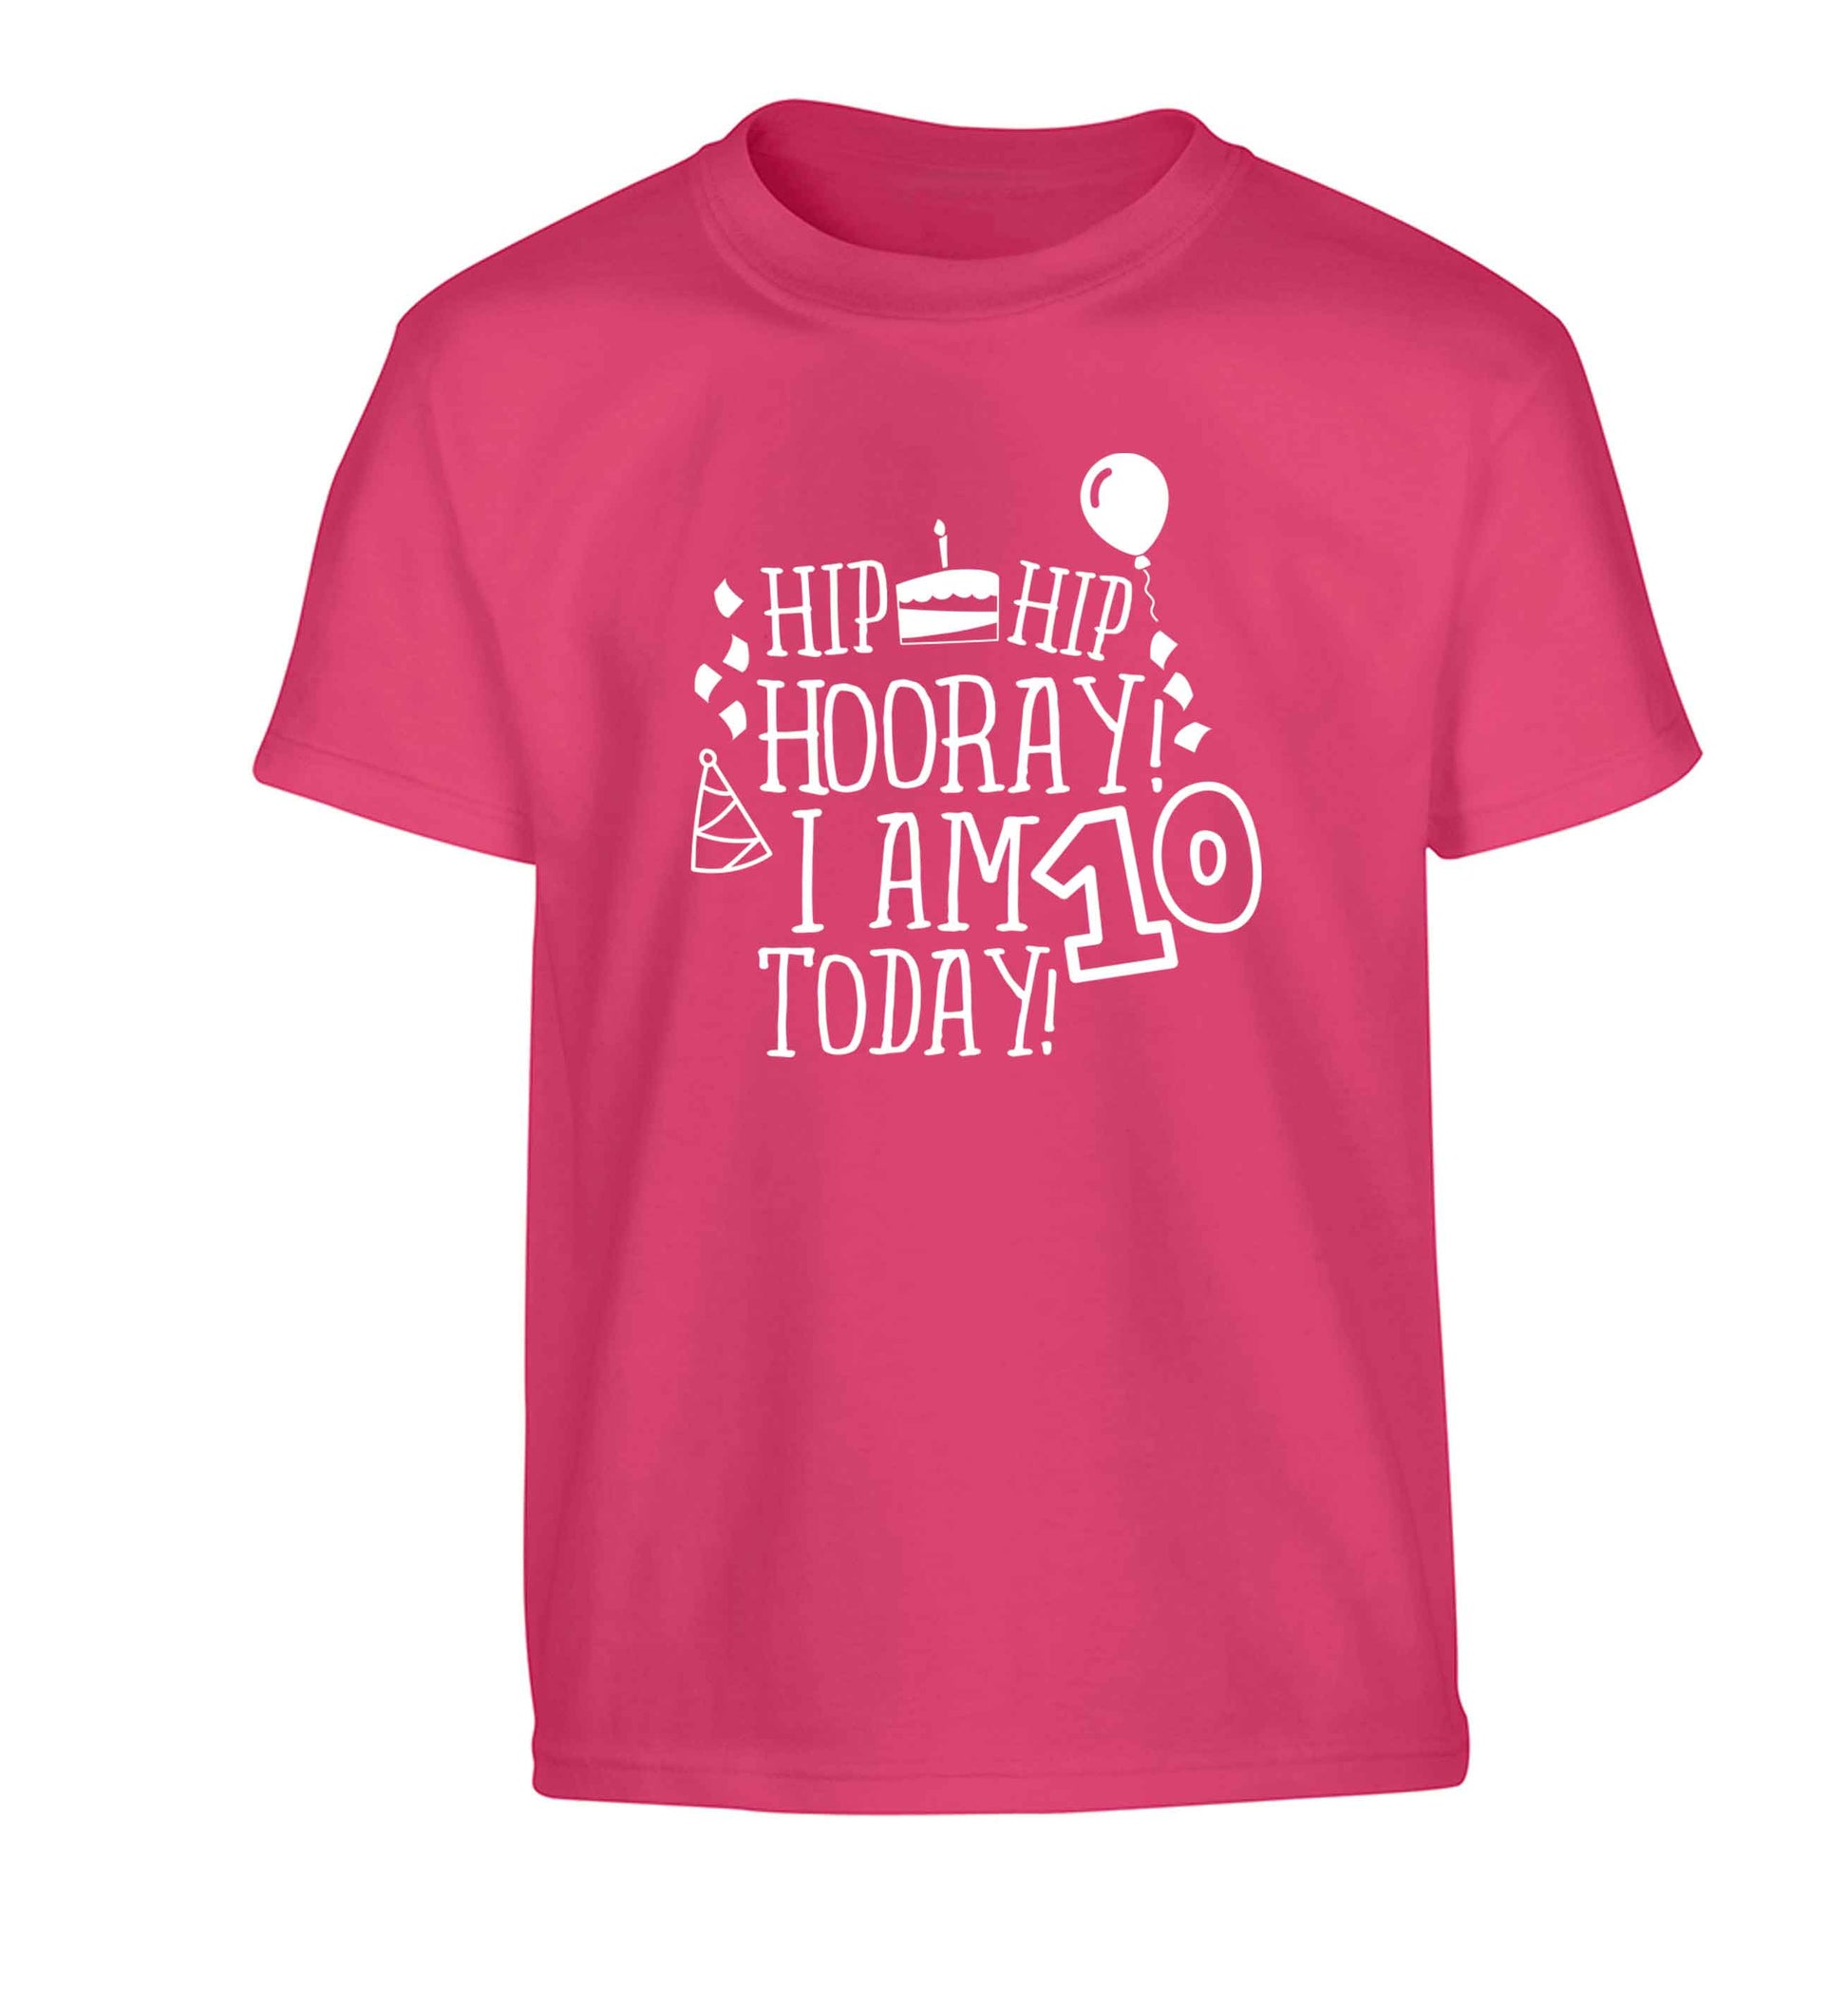 Hip hip hooray I am ten today! Children's pink Tshirt 12-13 Years